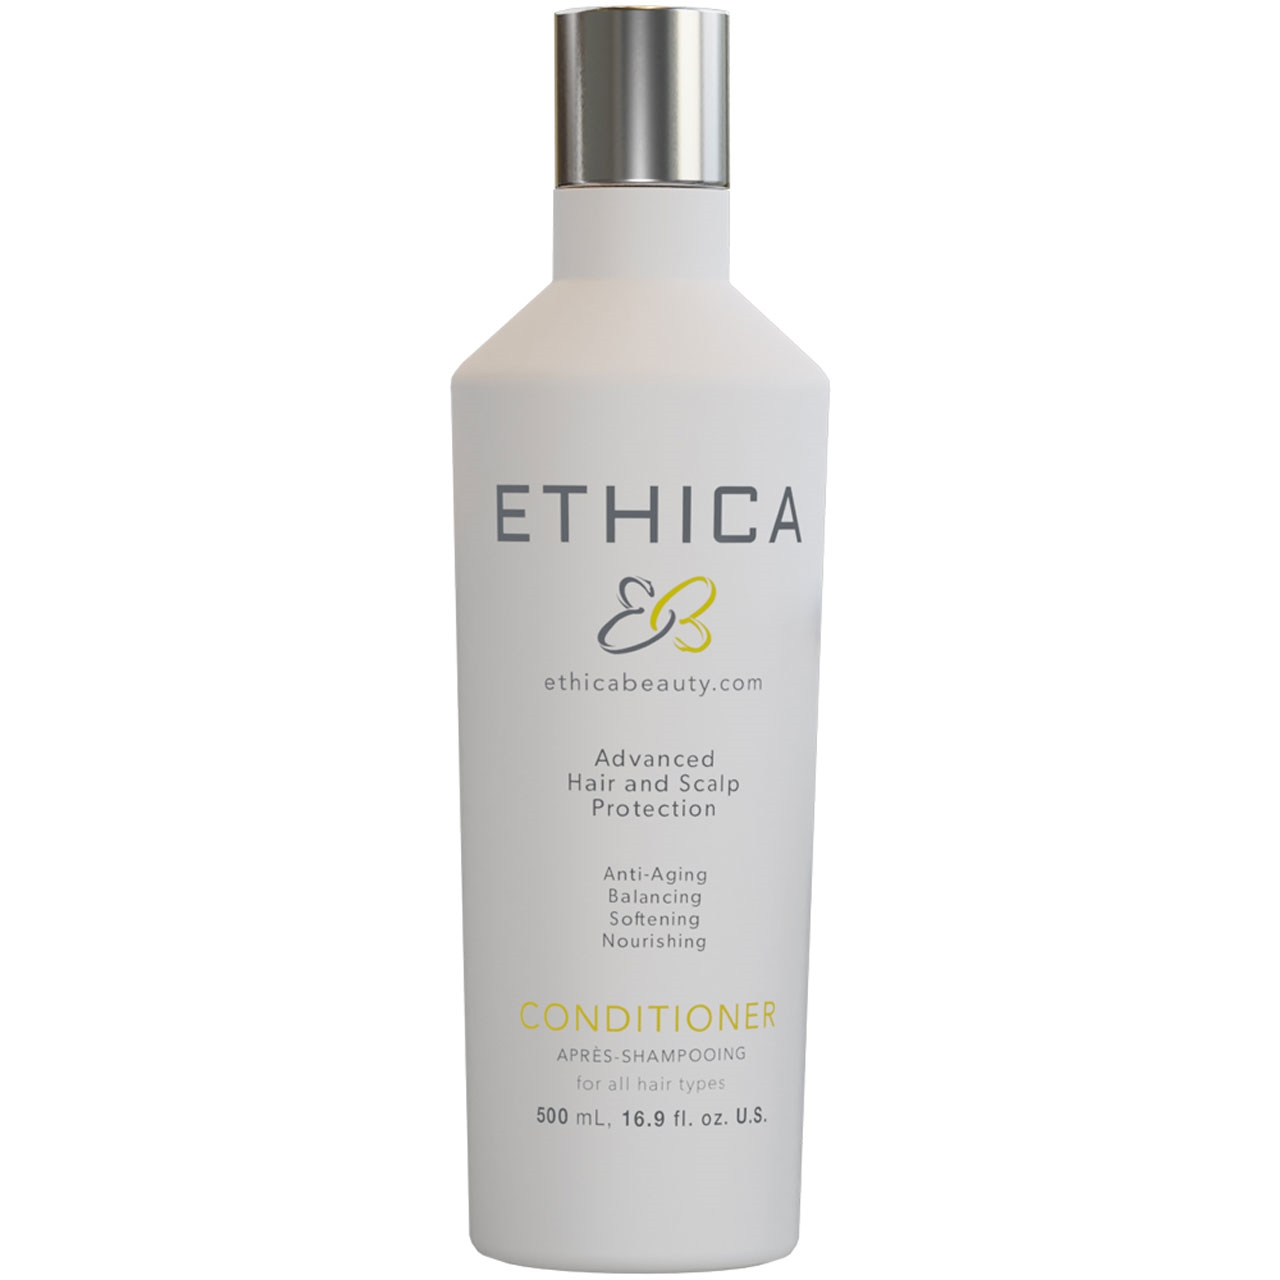 Ethica Anti-Aging Conditioner 16.9 Fl. Oz.